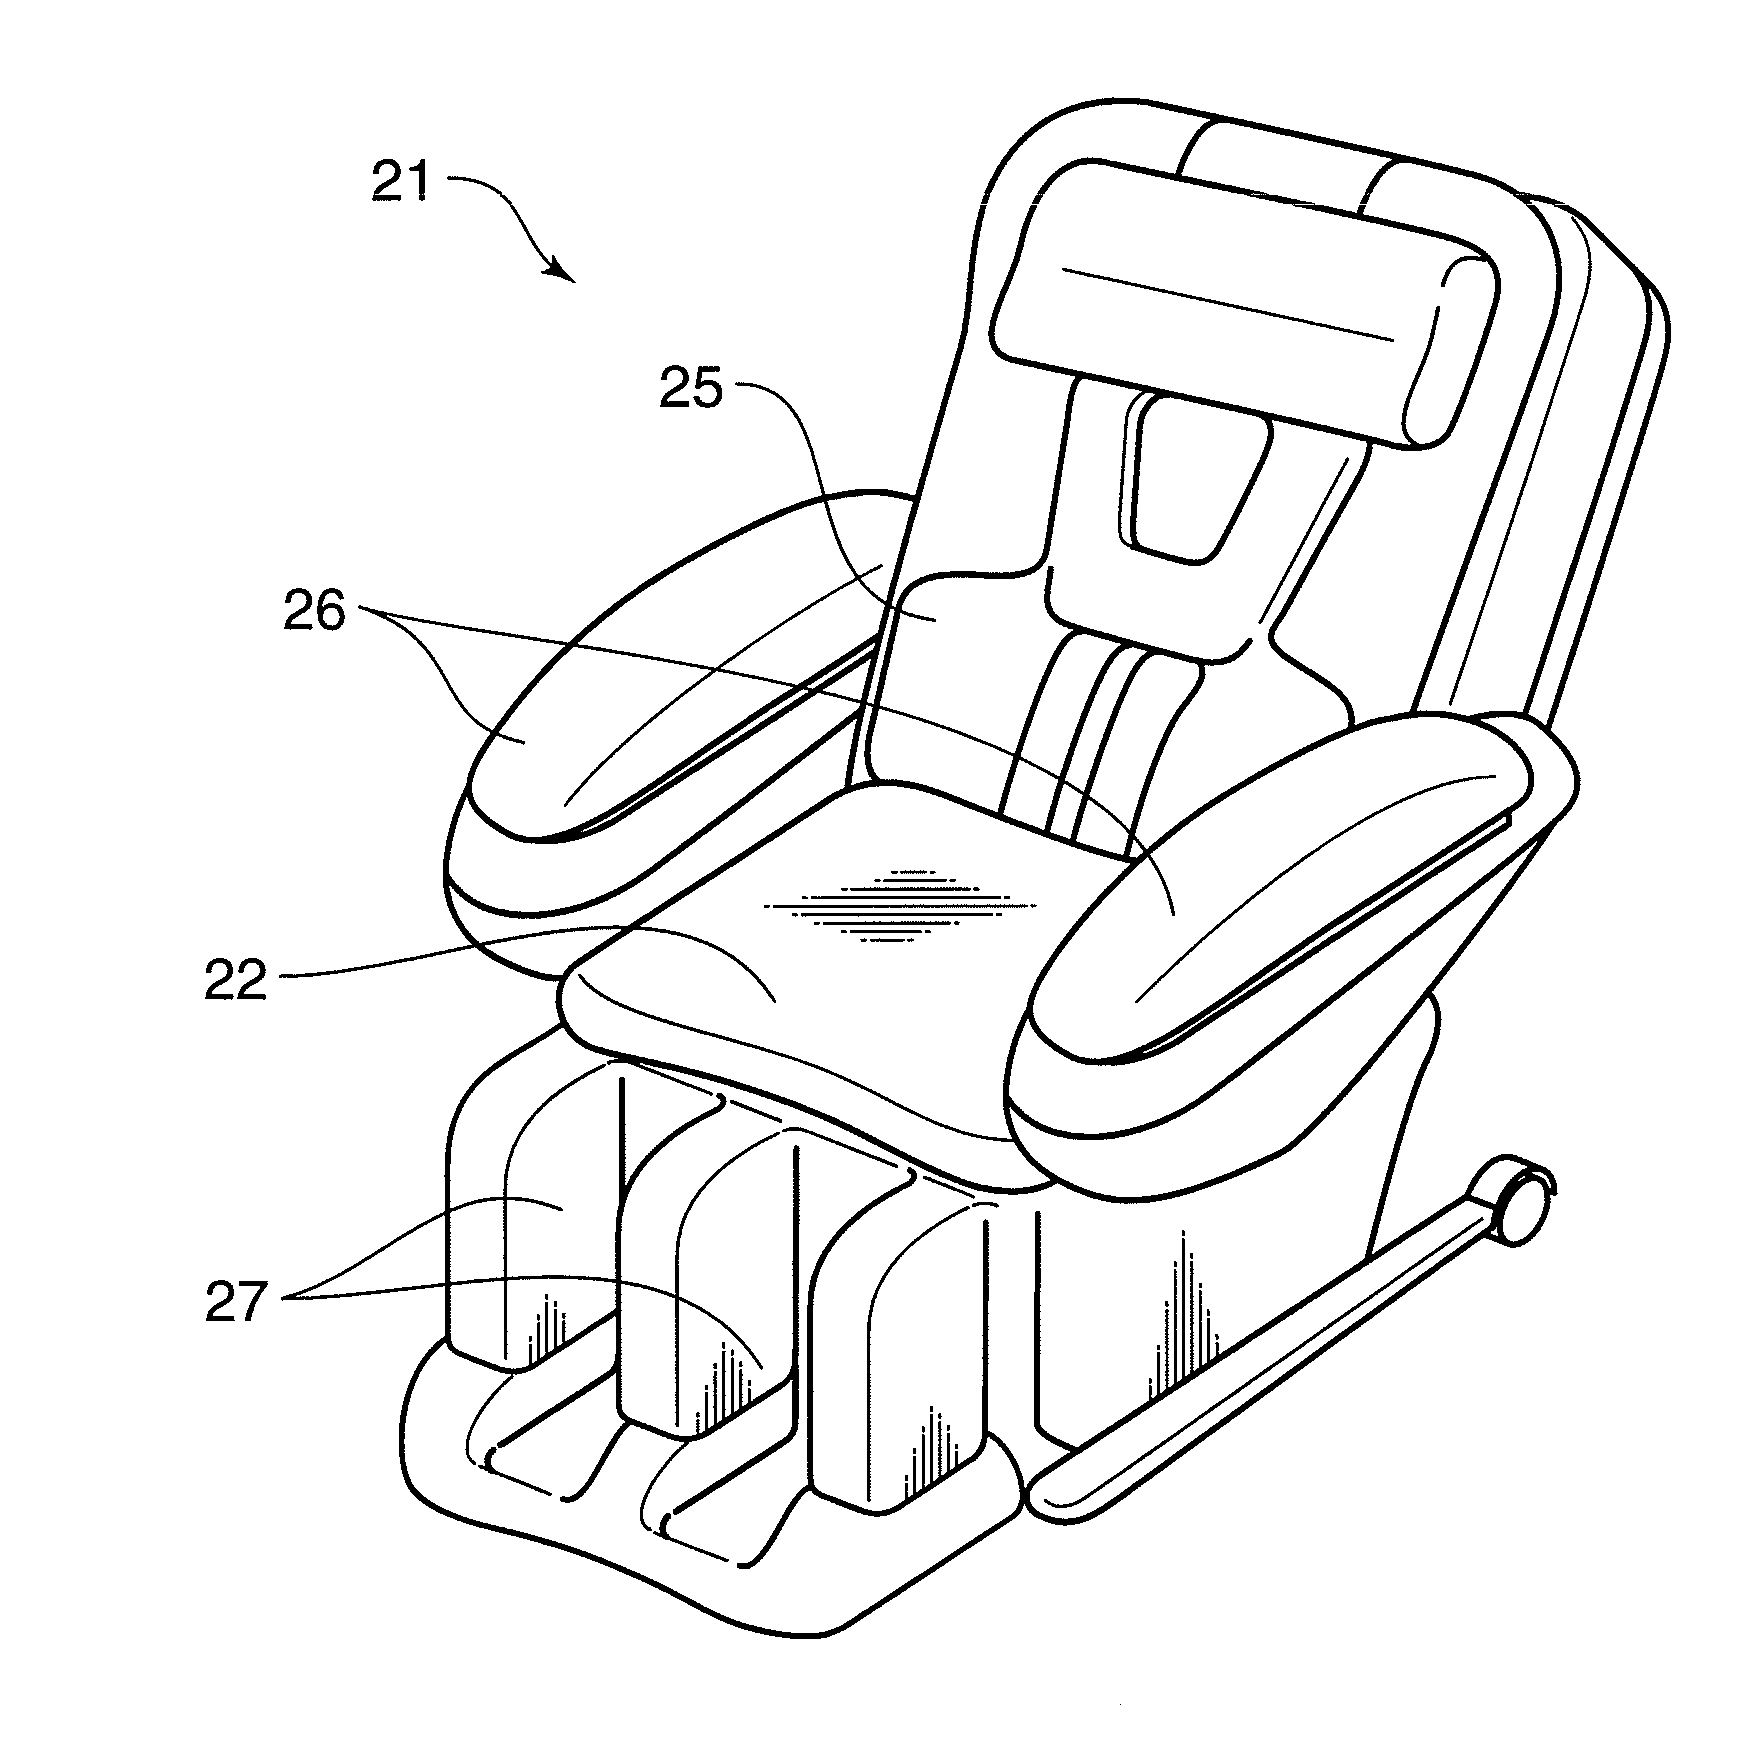 Chair-type massage machine